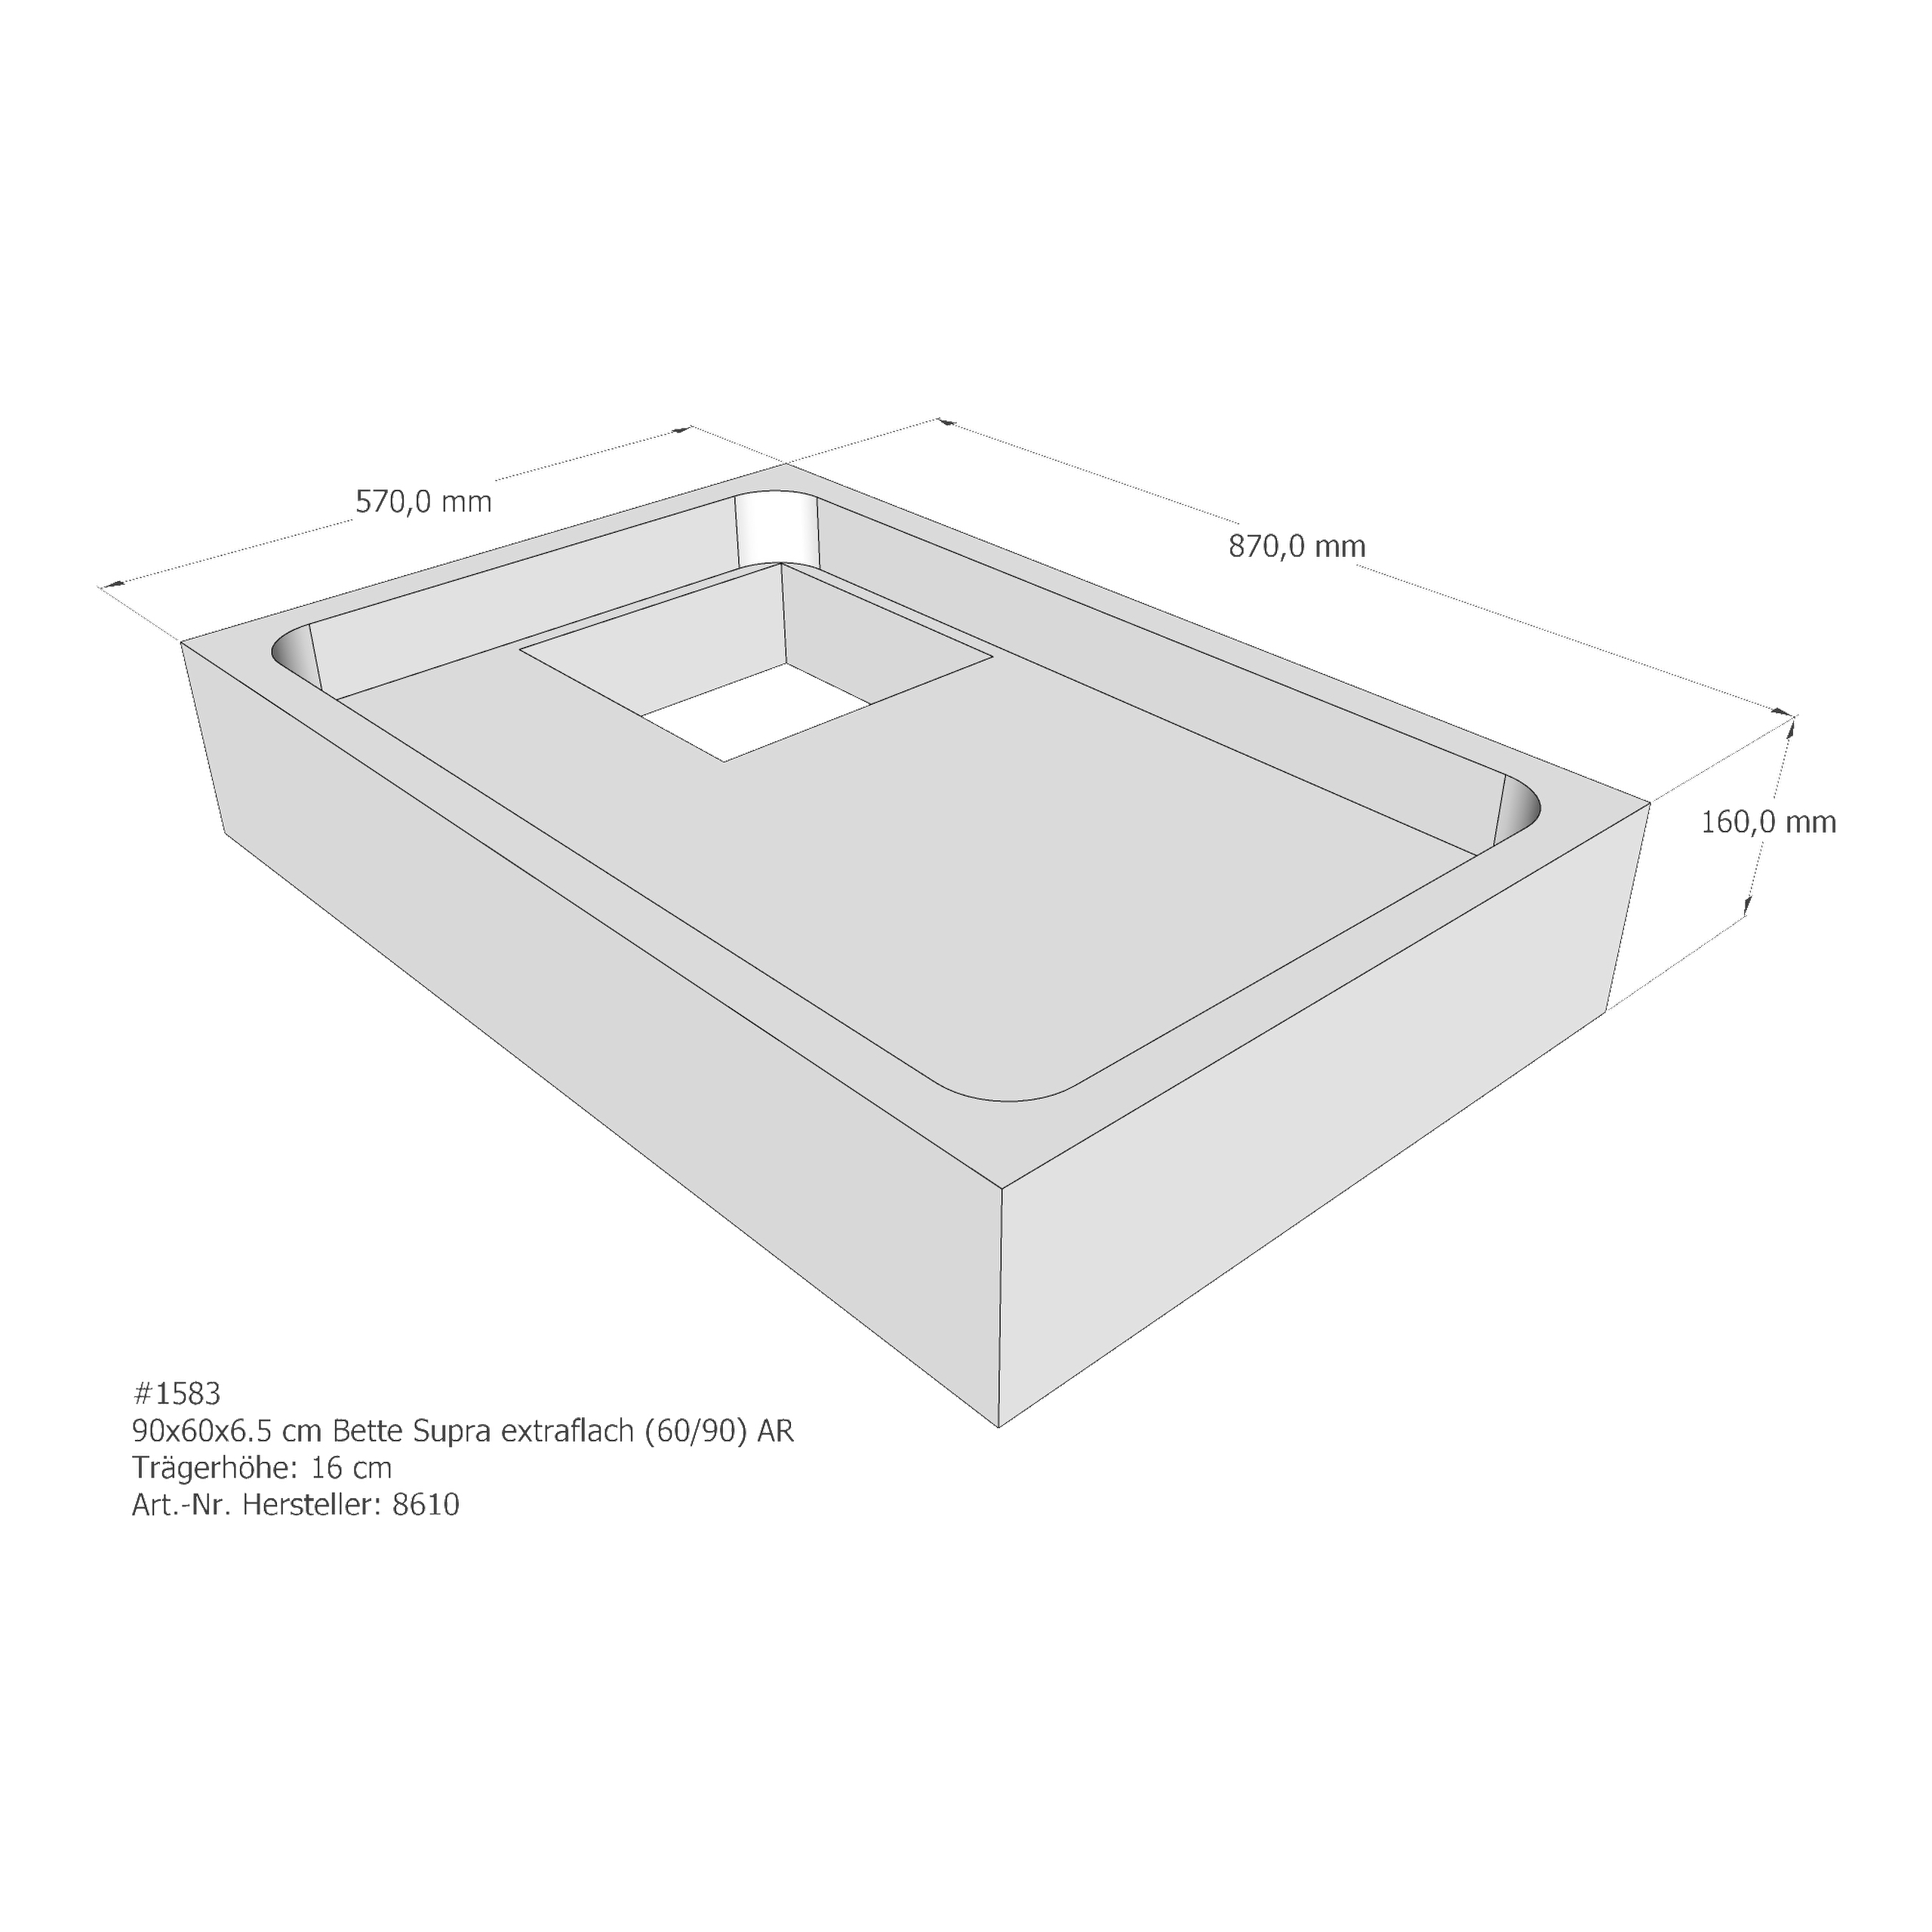 Duschwannenträger Bette BetteSupra (extraflach) 90x60x6,5 cm AR210